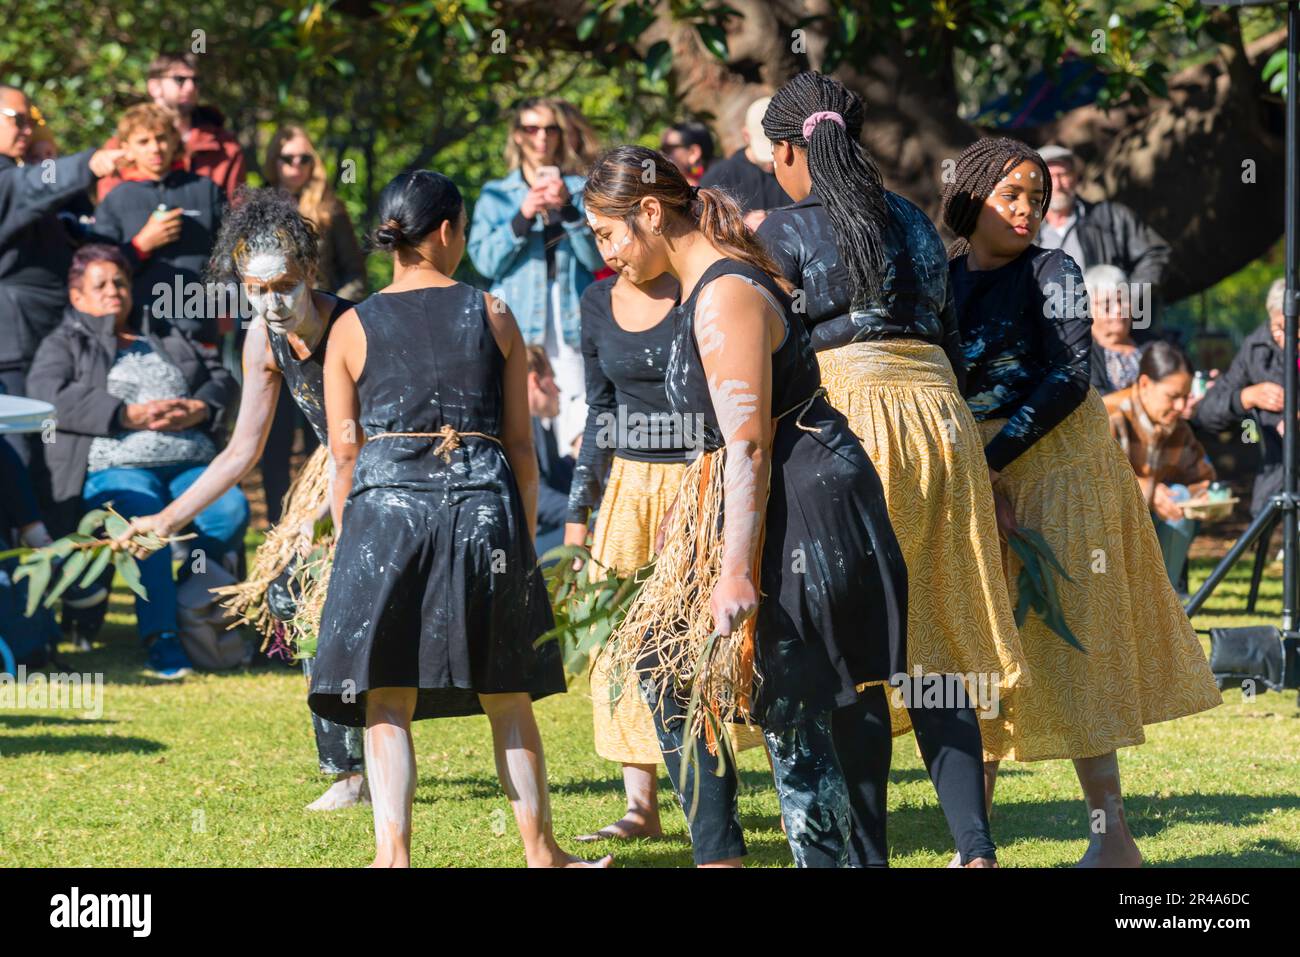 Sydney Australia 27 de mayo de 2023: Como parte de la Semana Nacional de la Reconciliación, se celebró hoy una reunión del Día de lo Sorry Day en el Recinto Tarpeiano en los Jardines Botánicos cerca de la Ópera de Sídney. La gente se reunió para recordar a las generaciones robadas (de los pueblos aborígenes) y crear sanación para los sobrevivientes. Patrocinado por la Corporación Aborígenes Coota Girls, el evento incluyó artesanías musicales y alimentos de arbustos. El Grupo de Baile de Mariposas Buuja Buuja actuó en la inauguración de la reunión. Crédito: Stephen Dwyer / Alamy Live News Foto de stock